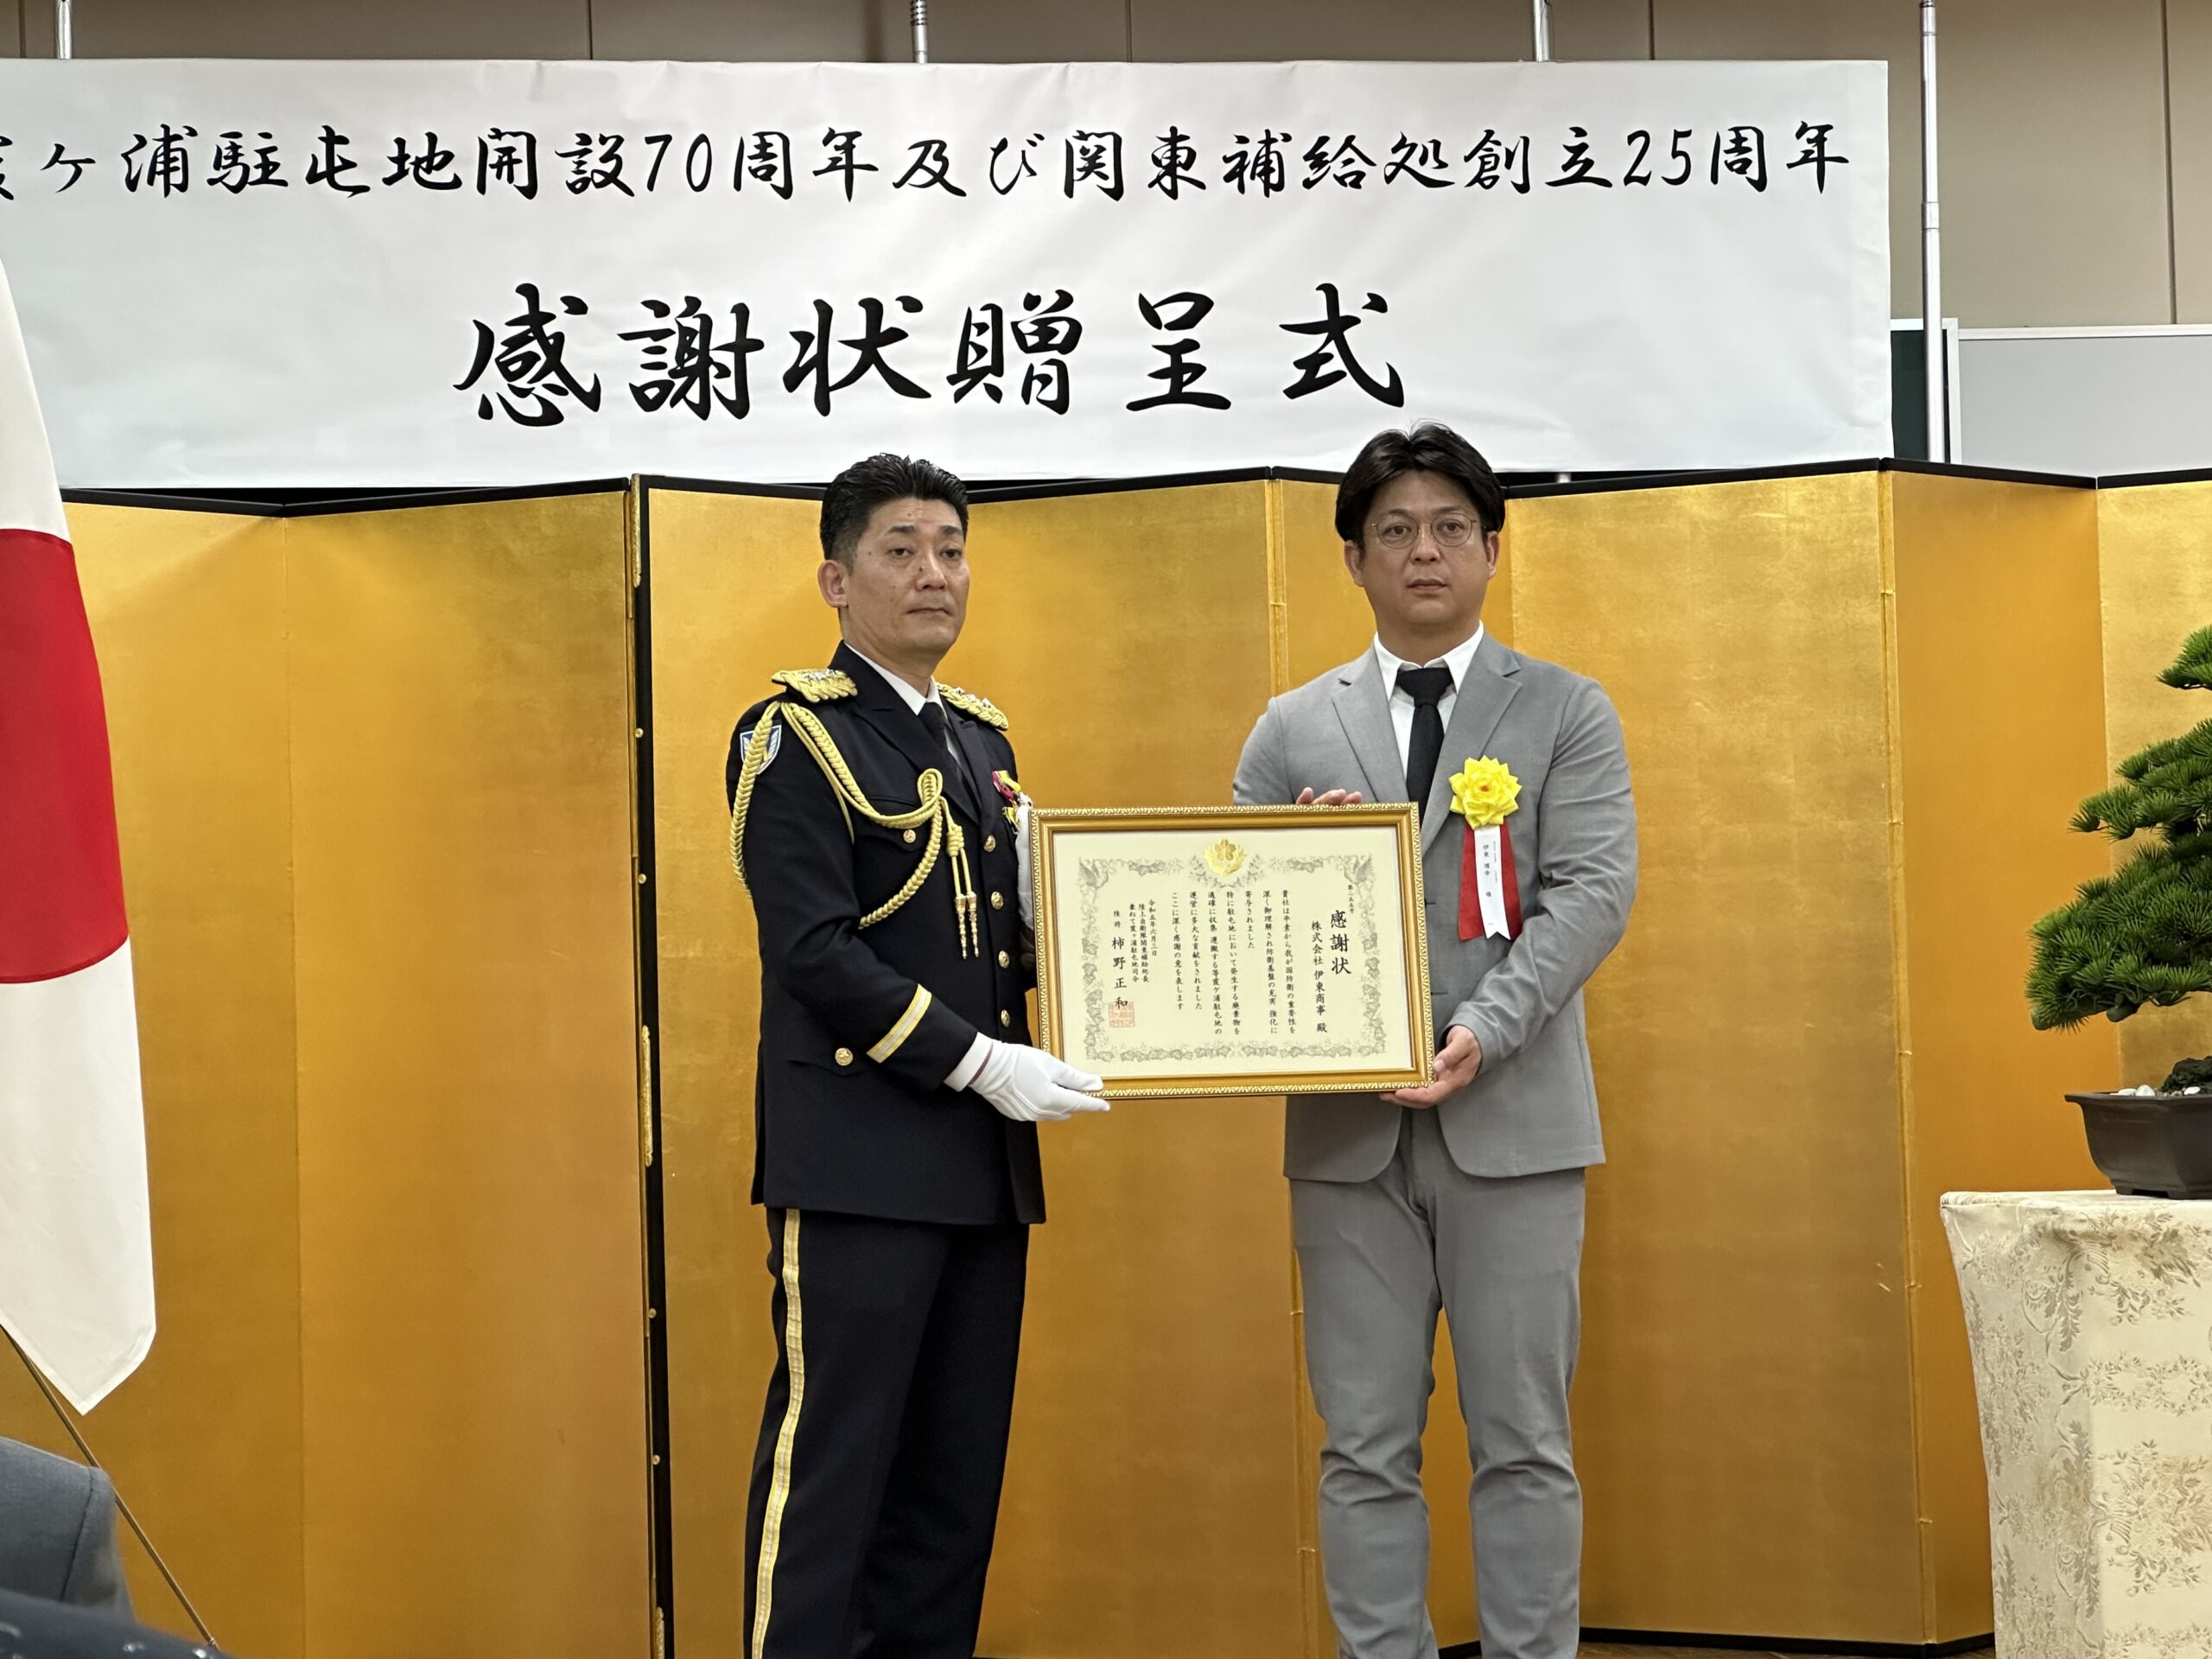 霞ヶ浦駐屯地開設70周年･関東補給処創立25周年記念行事に招かれました。